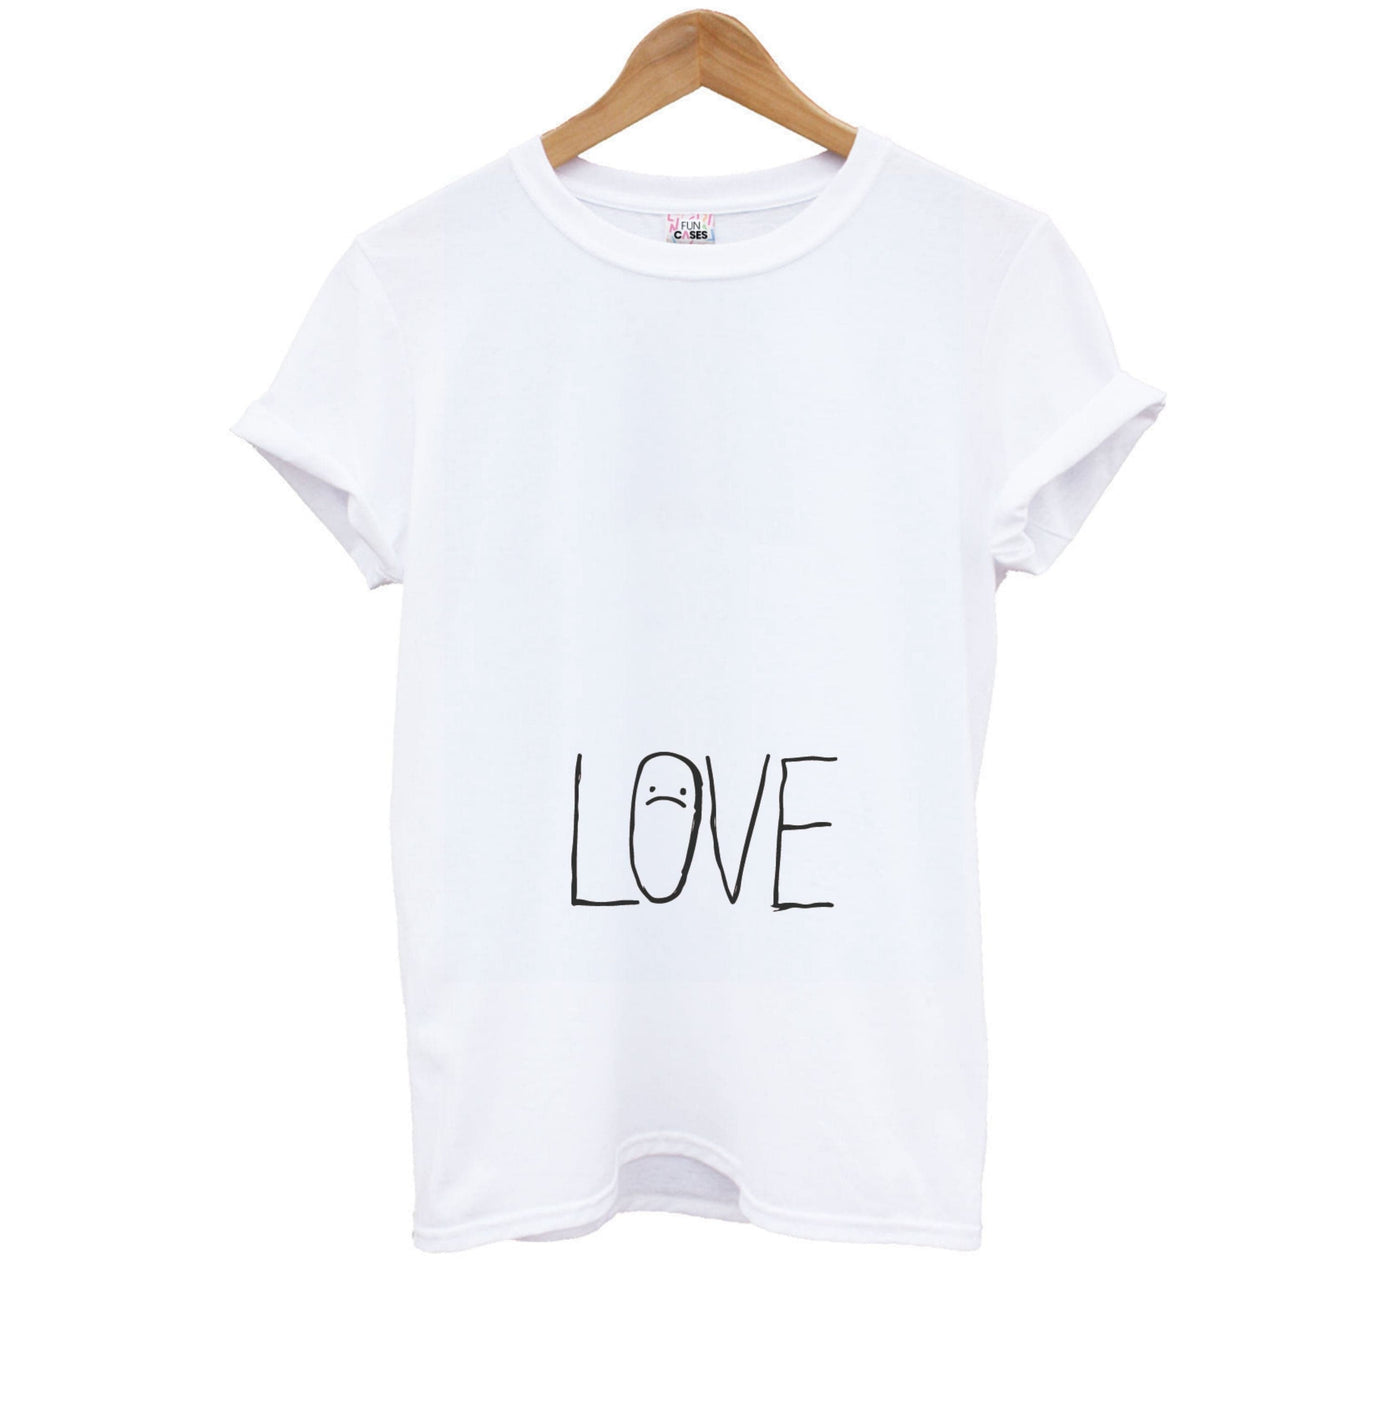 Love - Lil Peep Kids T-Shirt